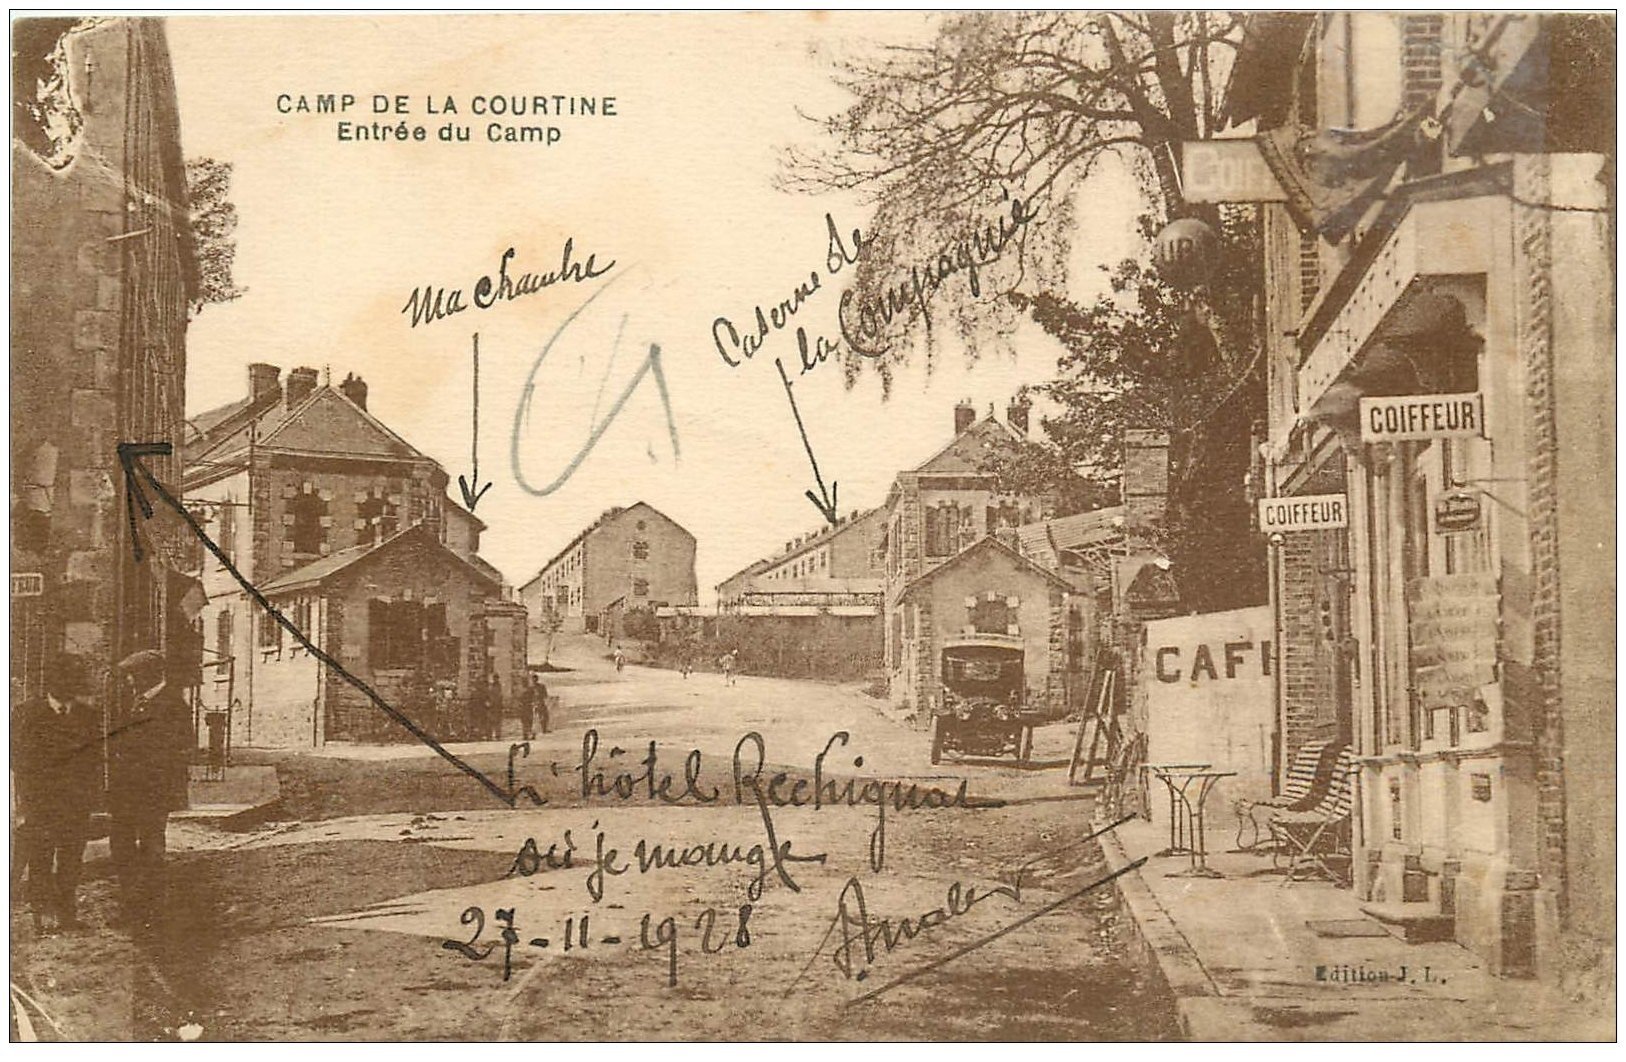 23 CAMP DE LA COURTINE. Coiffeur et Hôtel Rechignac 1928. Voiture ancienne